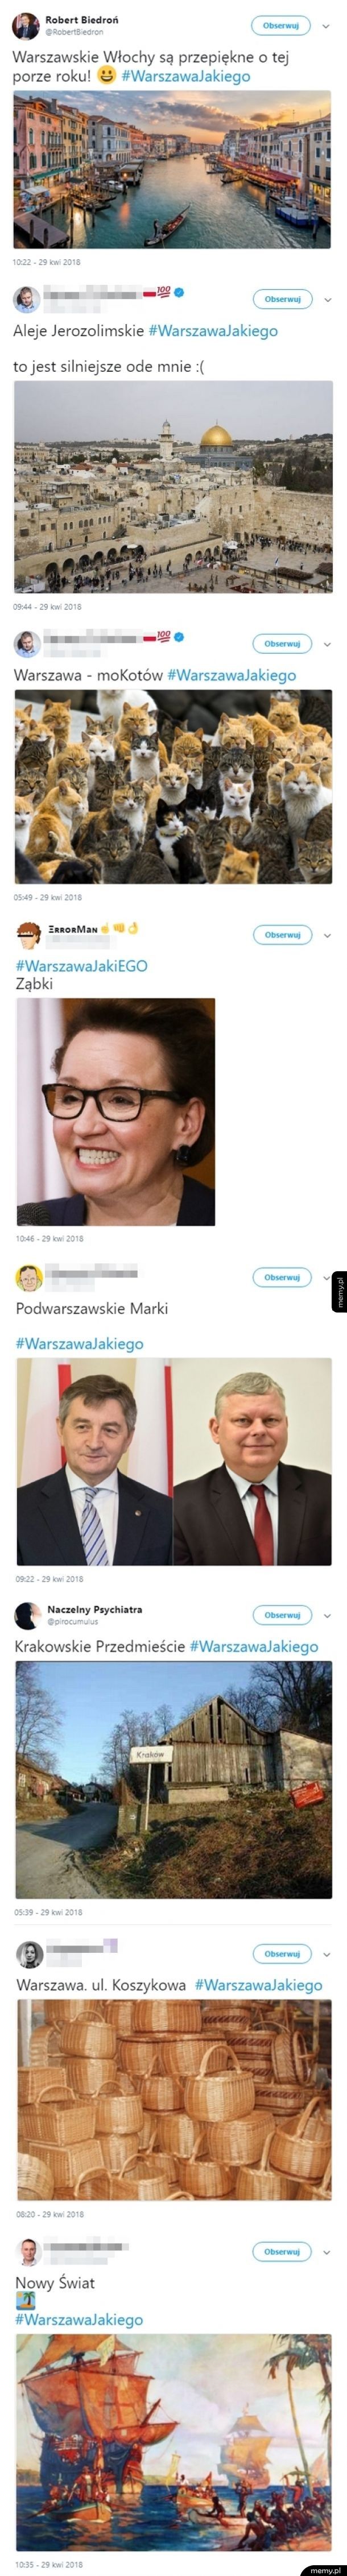 Warszawa według Patryka Jakiego